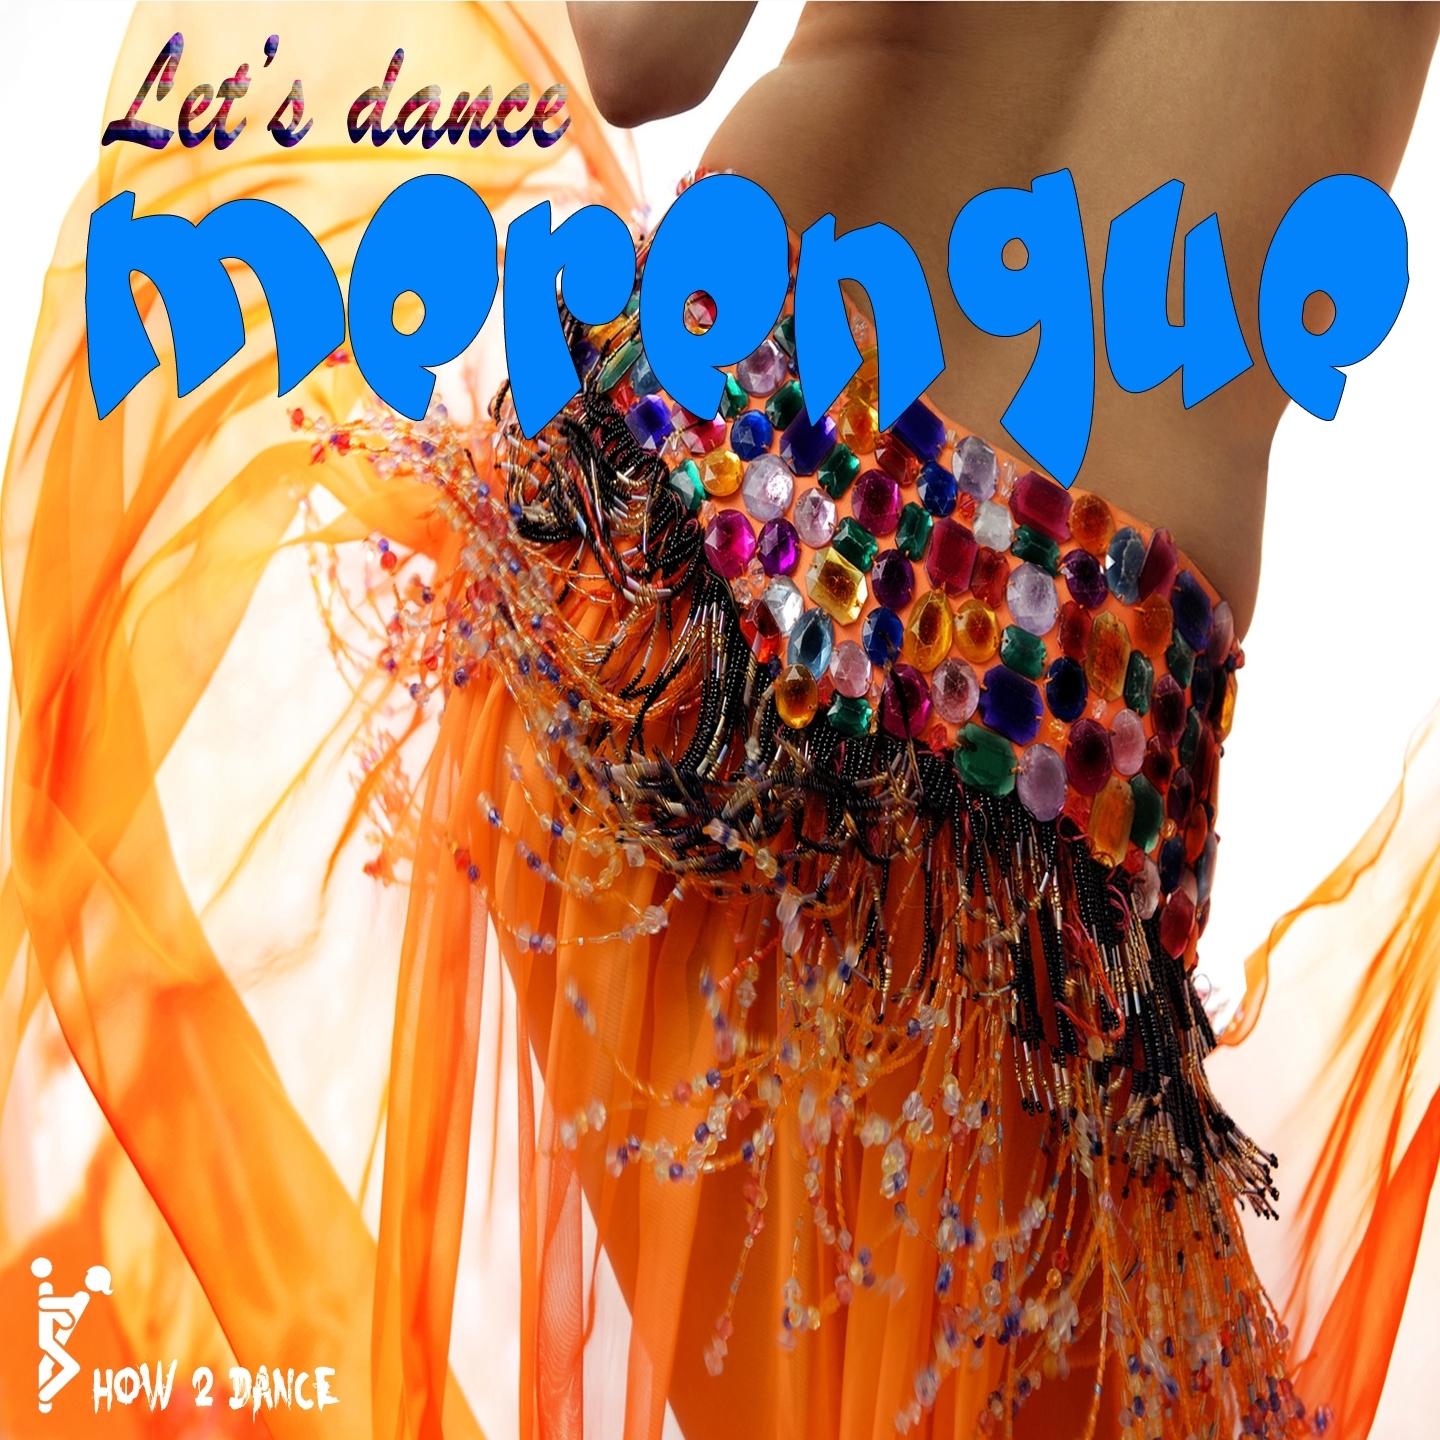 Let's Dance Merengue